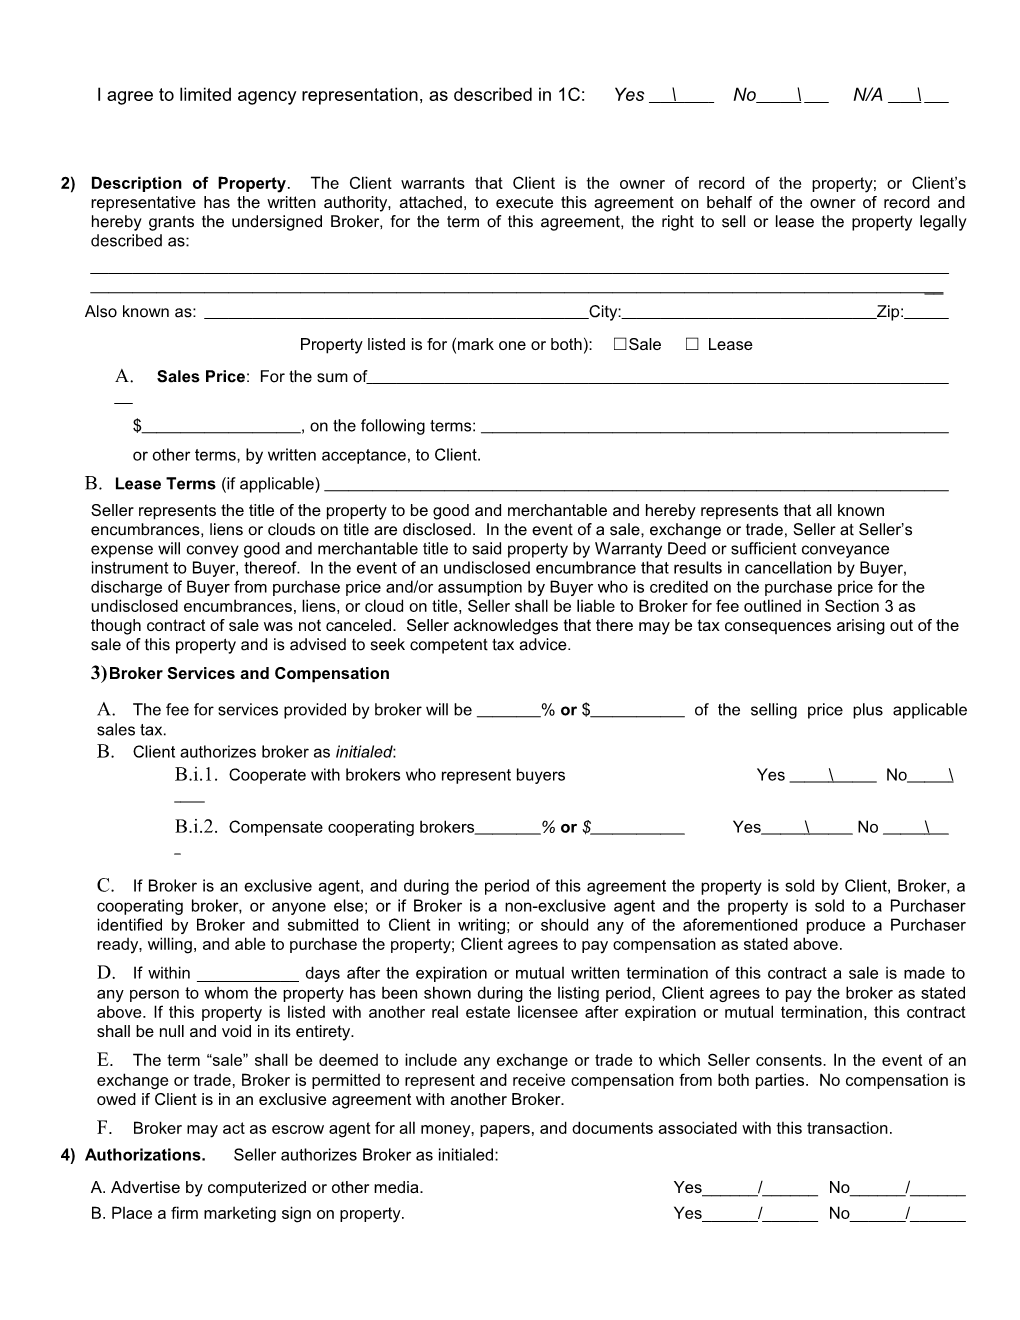 Agency Agreement Owner - South Dakota (Listing Agreement)